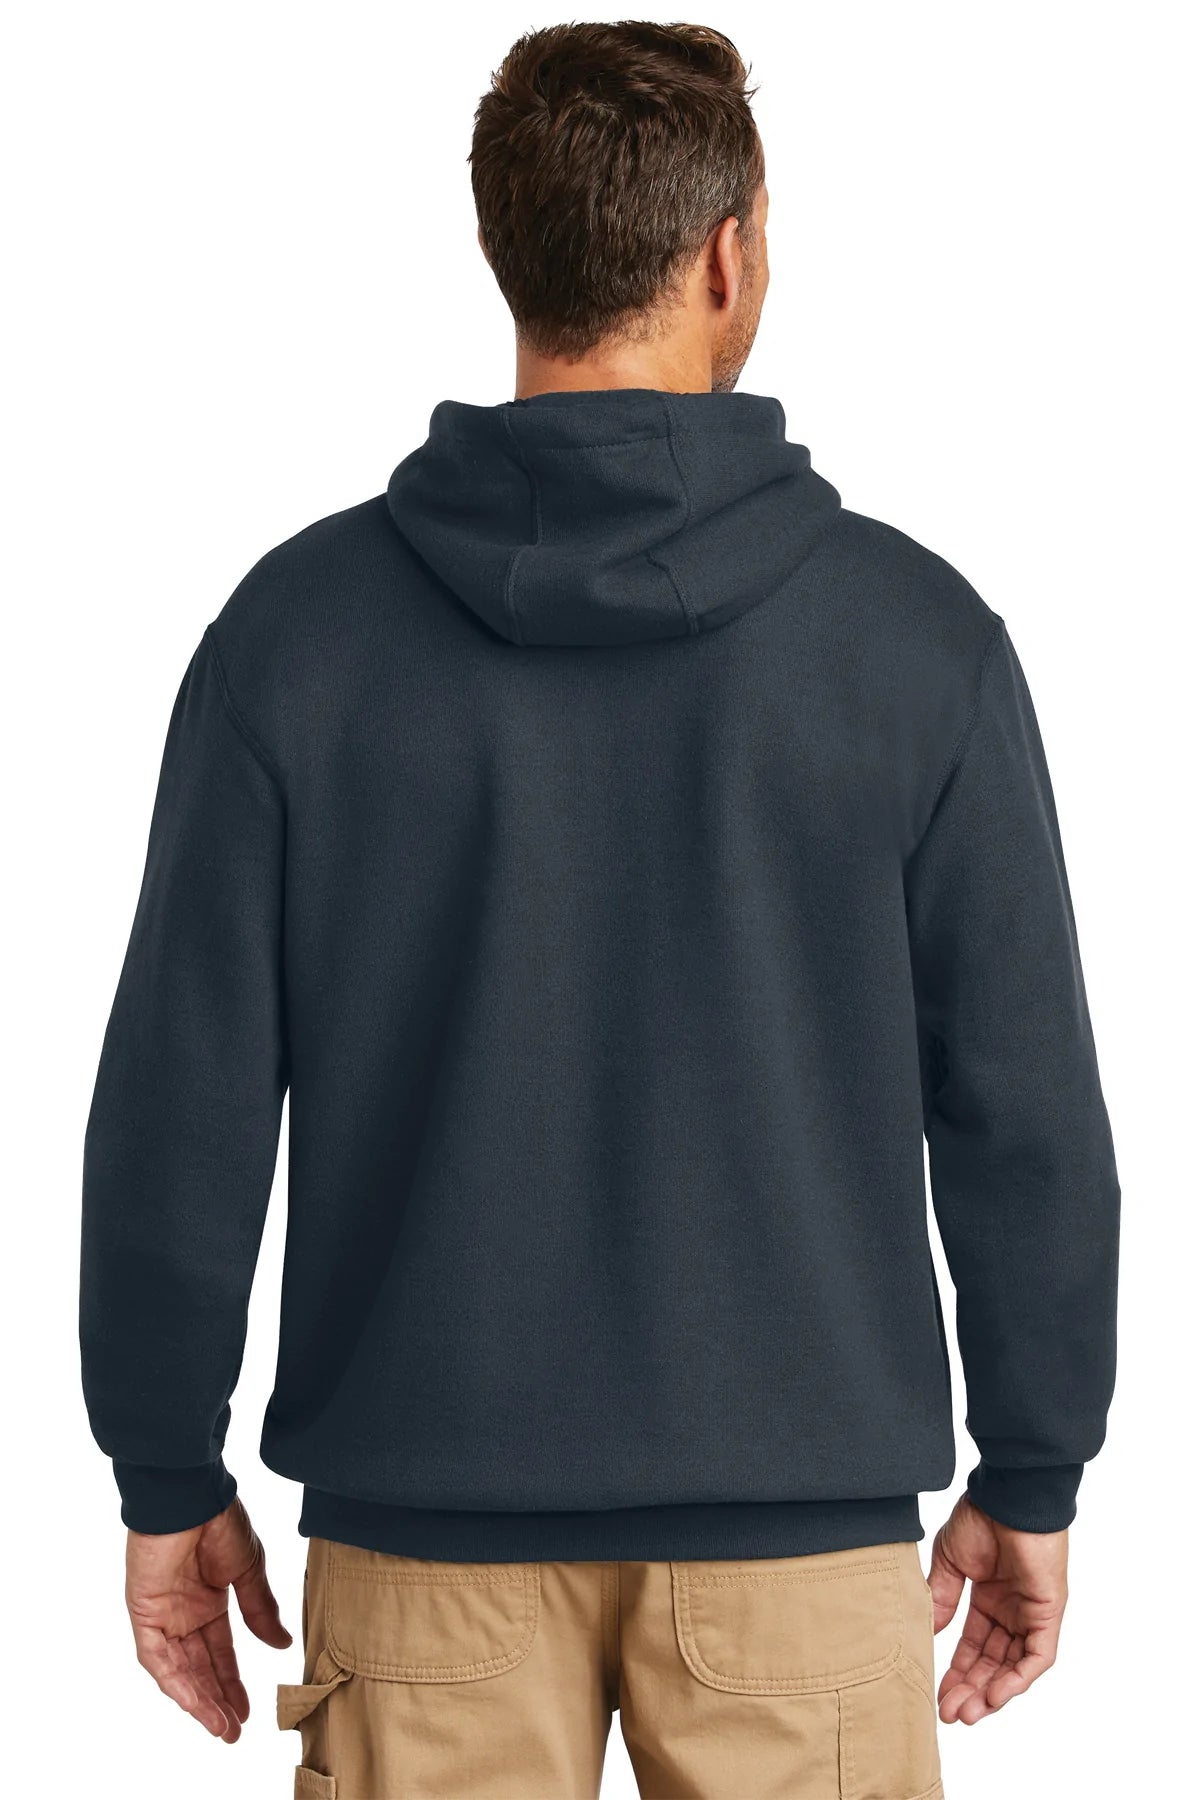 Carhartt Tall Hooded Custom Sweatshirts, New Navy